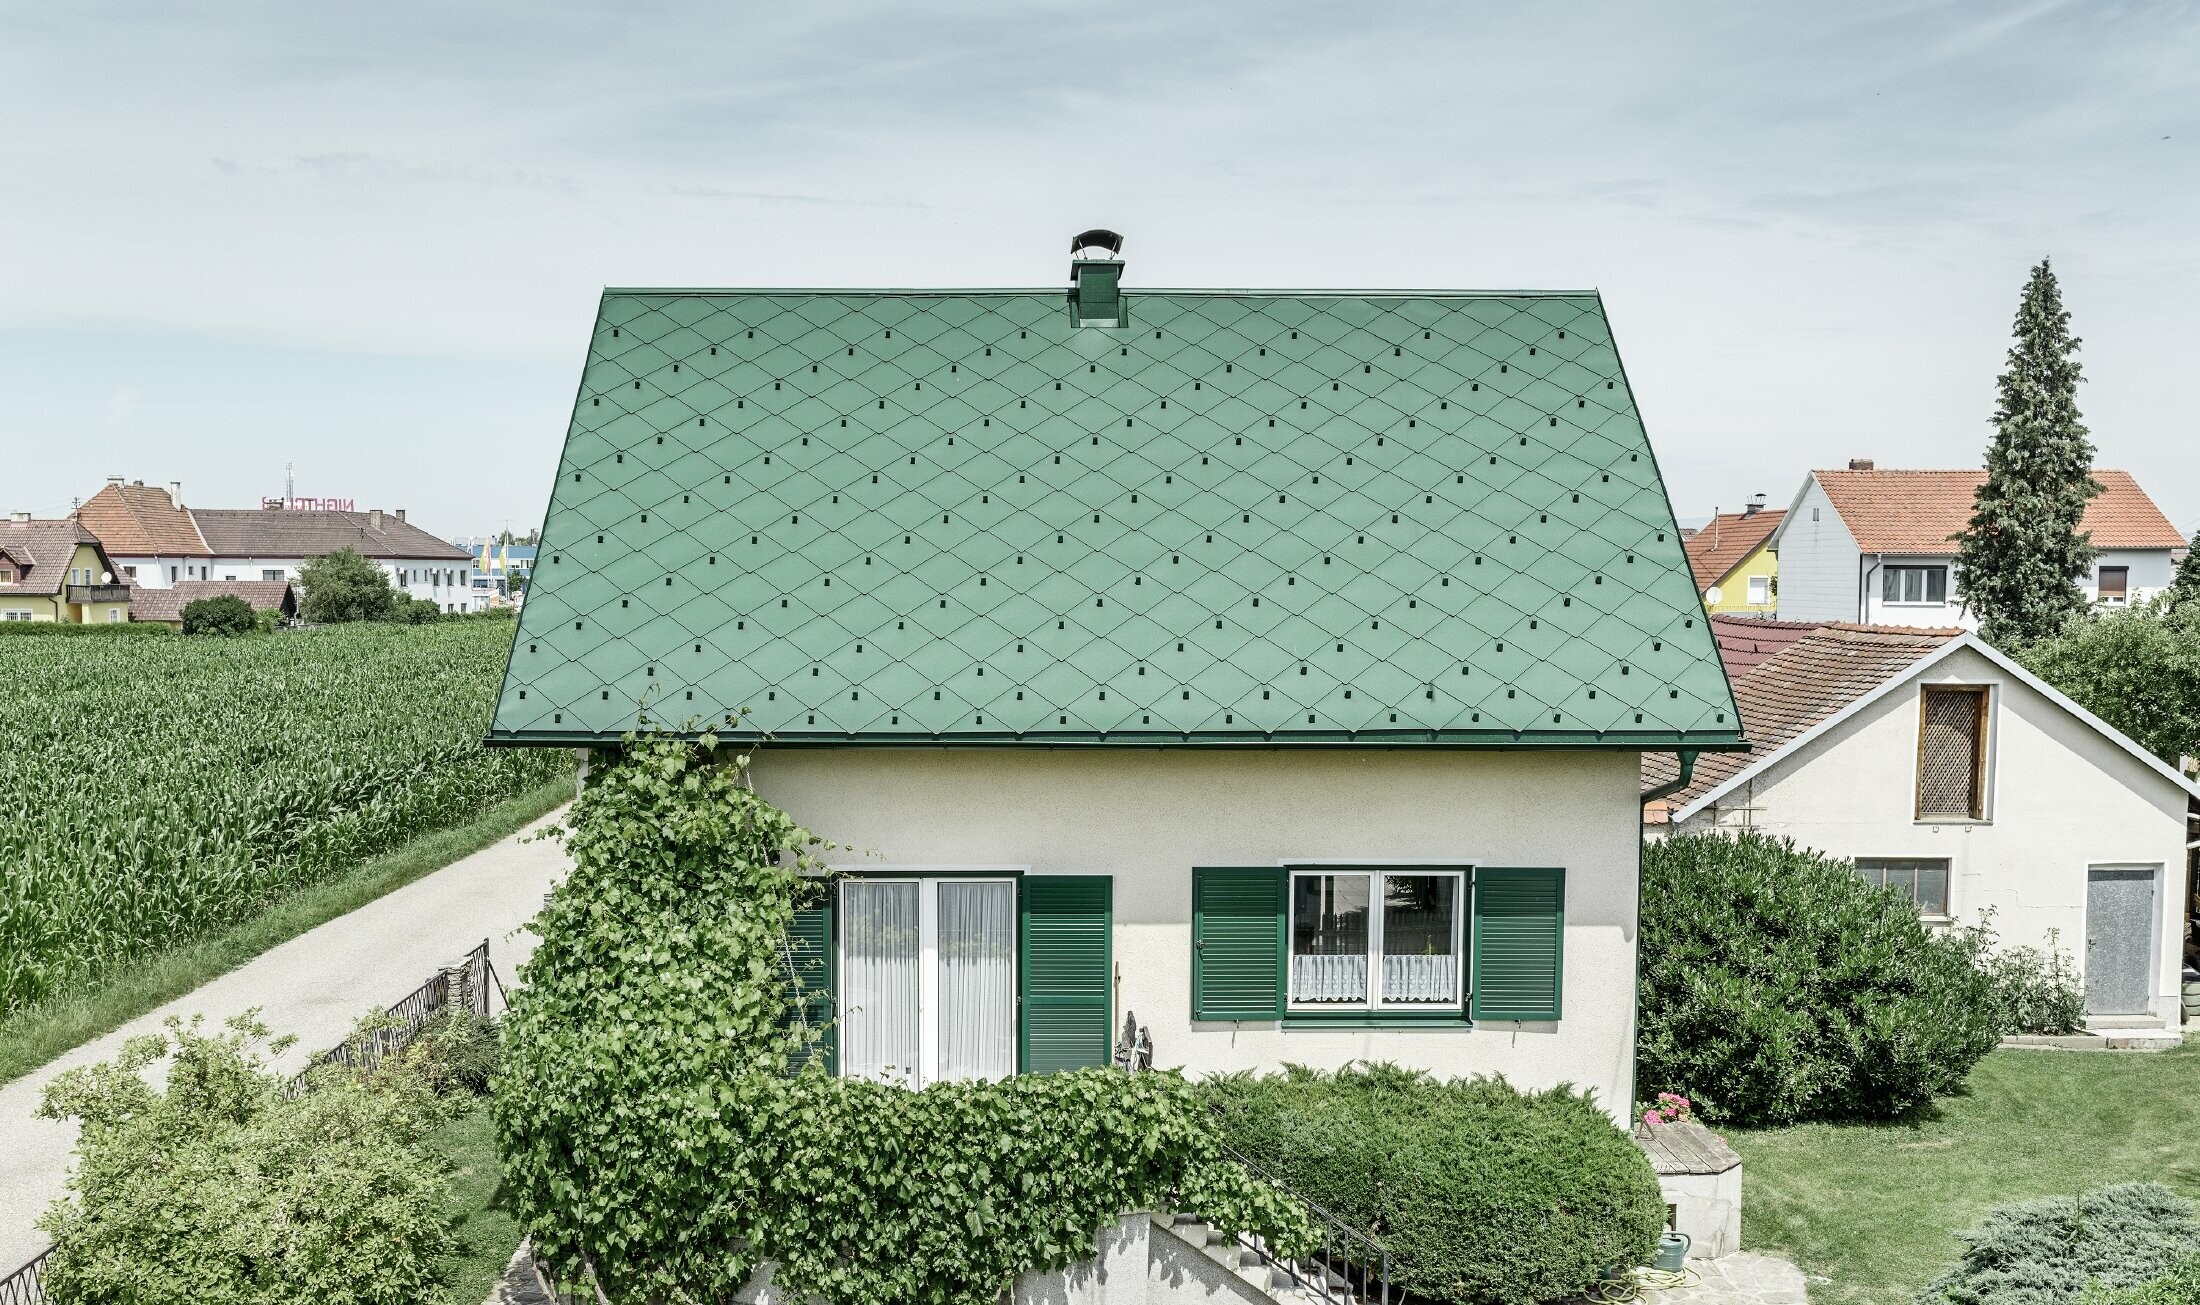 Klasyczny dom jednorodzinny z dachem dwuspadowym, pokryty aluminium w kolorze zieleni mchu z zielonymi okiennicami. Dach pokryto dachówką romb PREFA 44 × 44 w kolorze P.10 zieleń mchu.